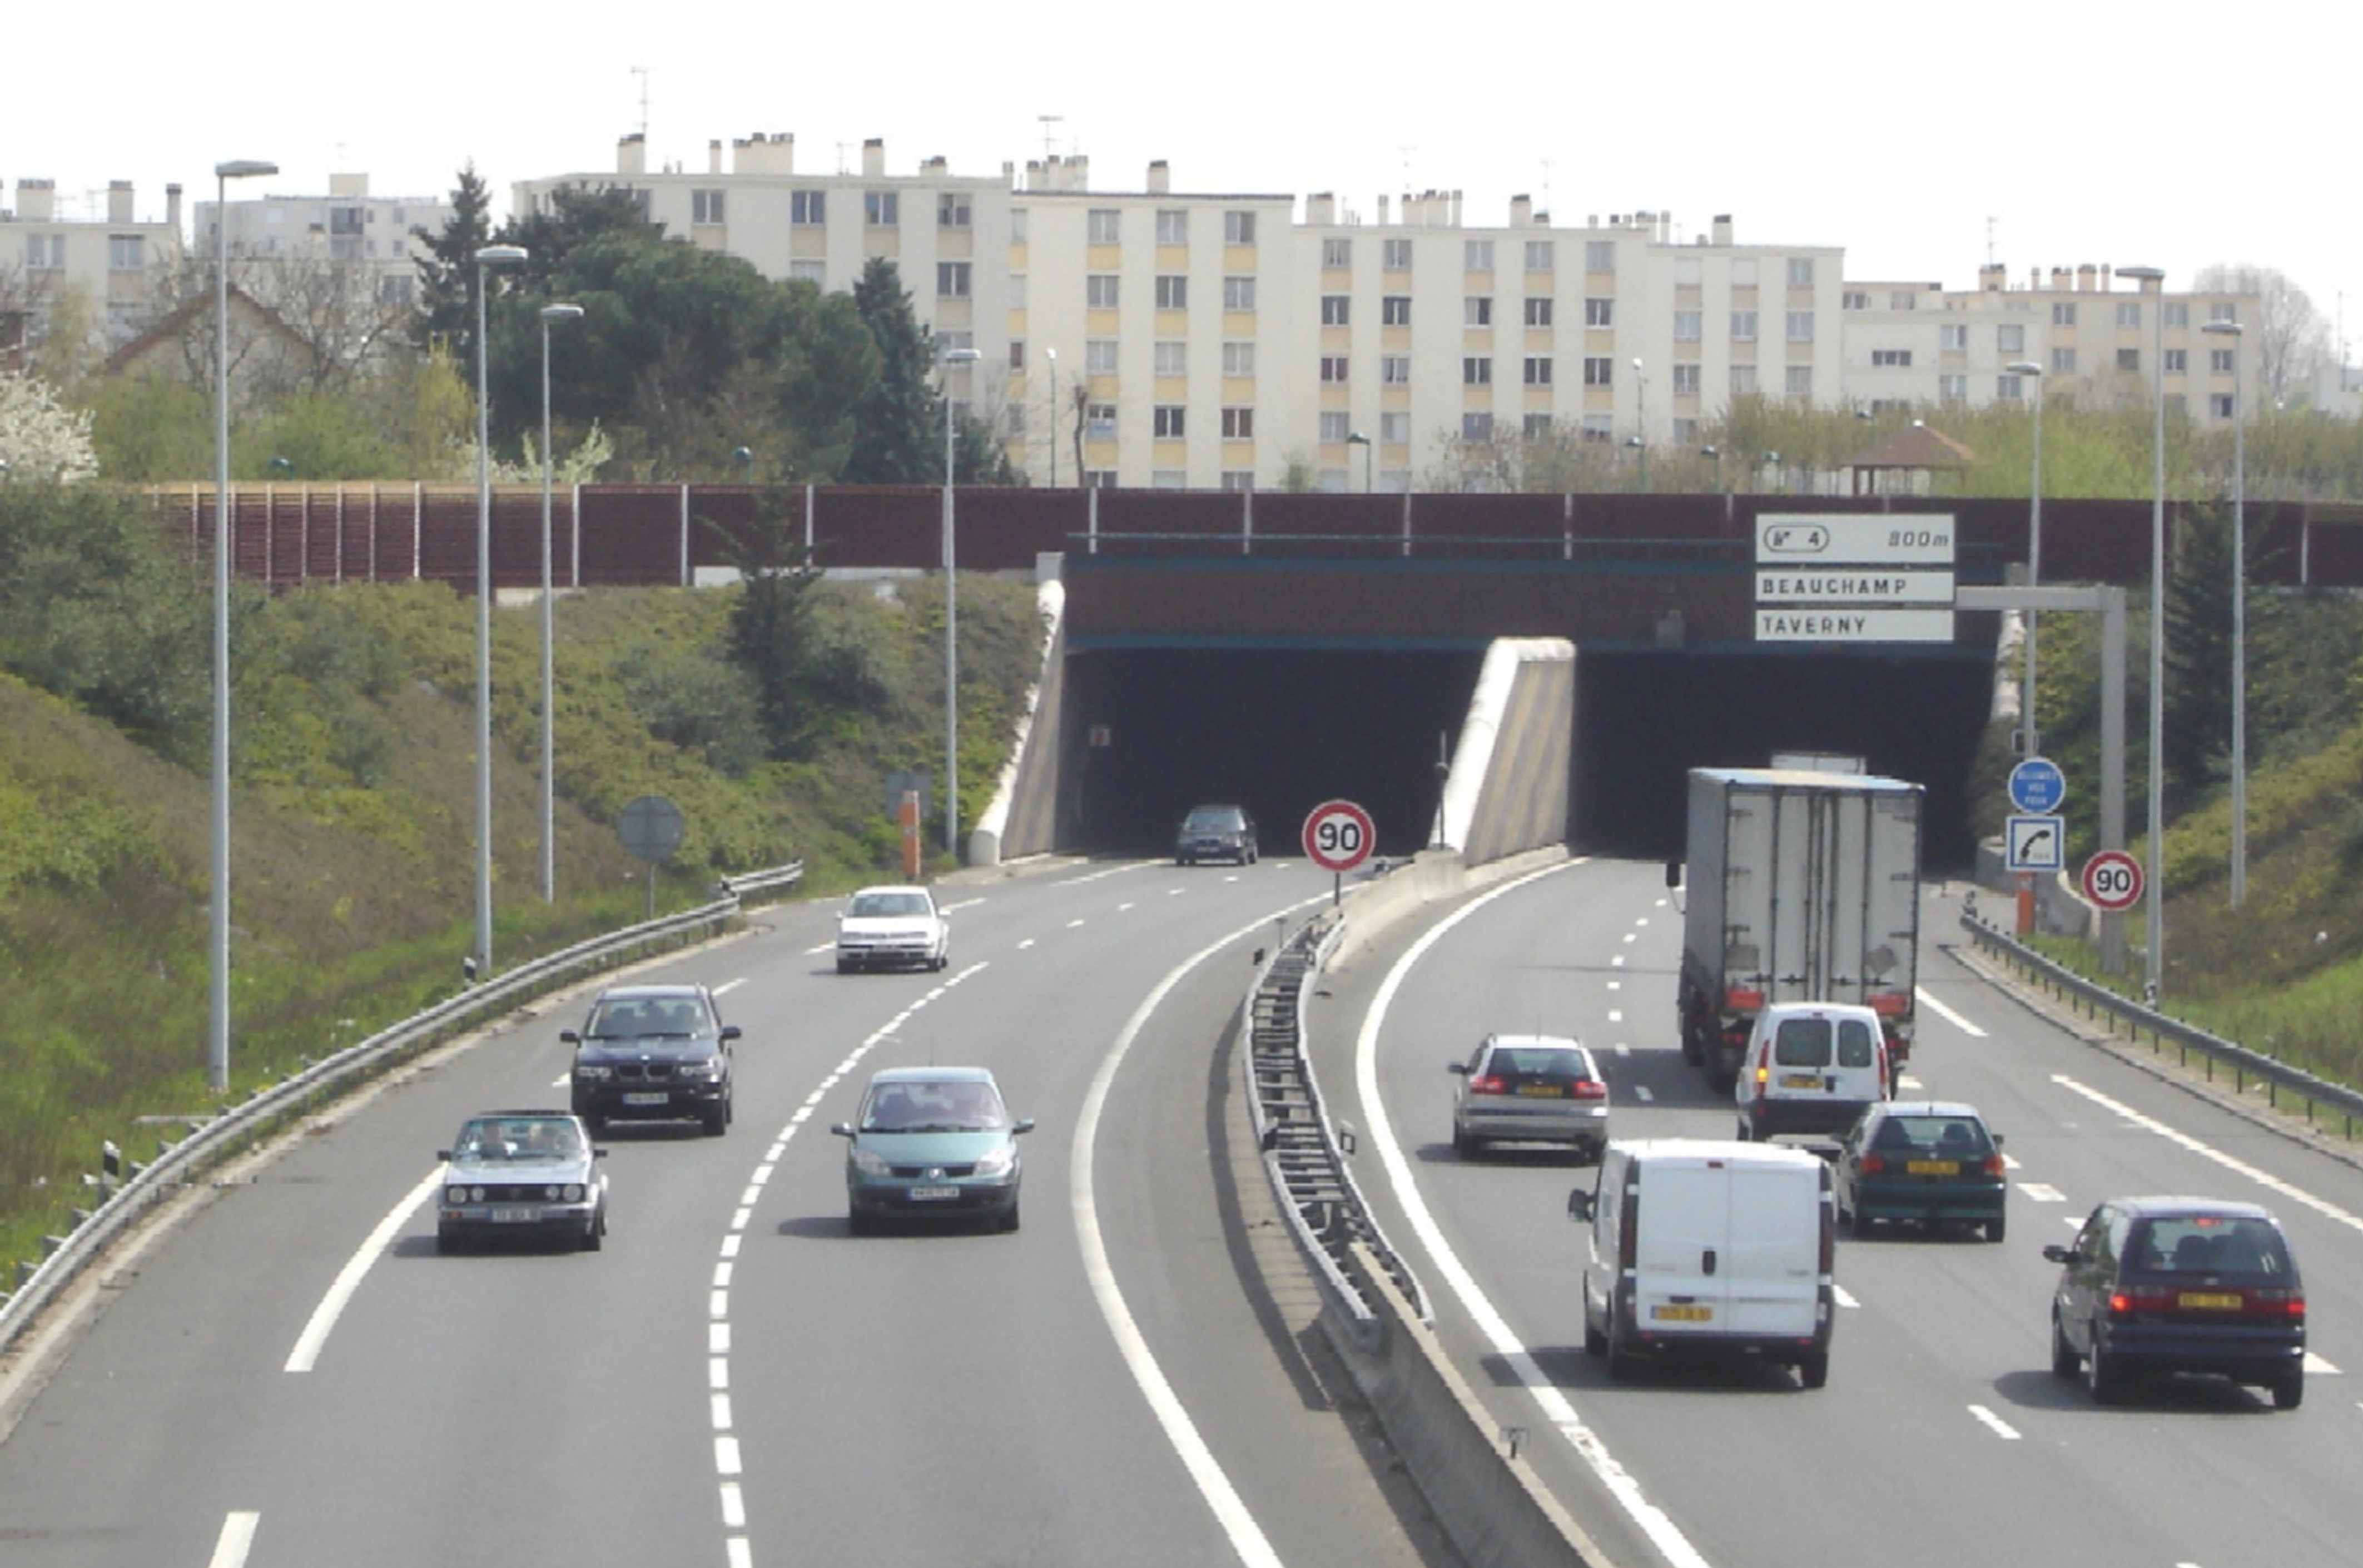 Figura 1: Ejemplo de una barrera de protección al ruido sobre la boca de un túnel en una zona urbana